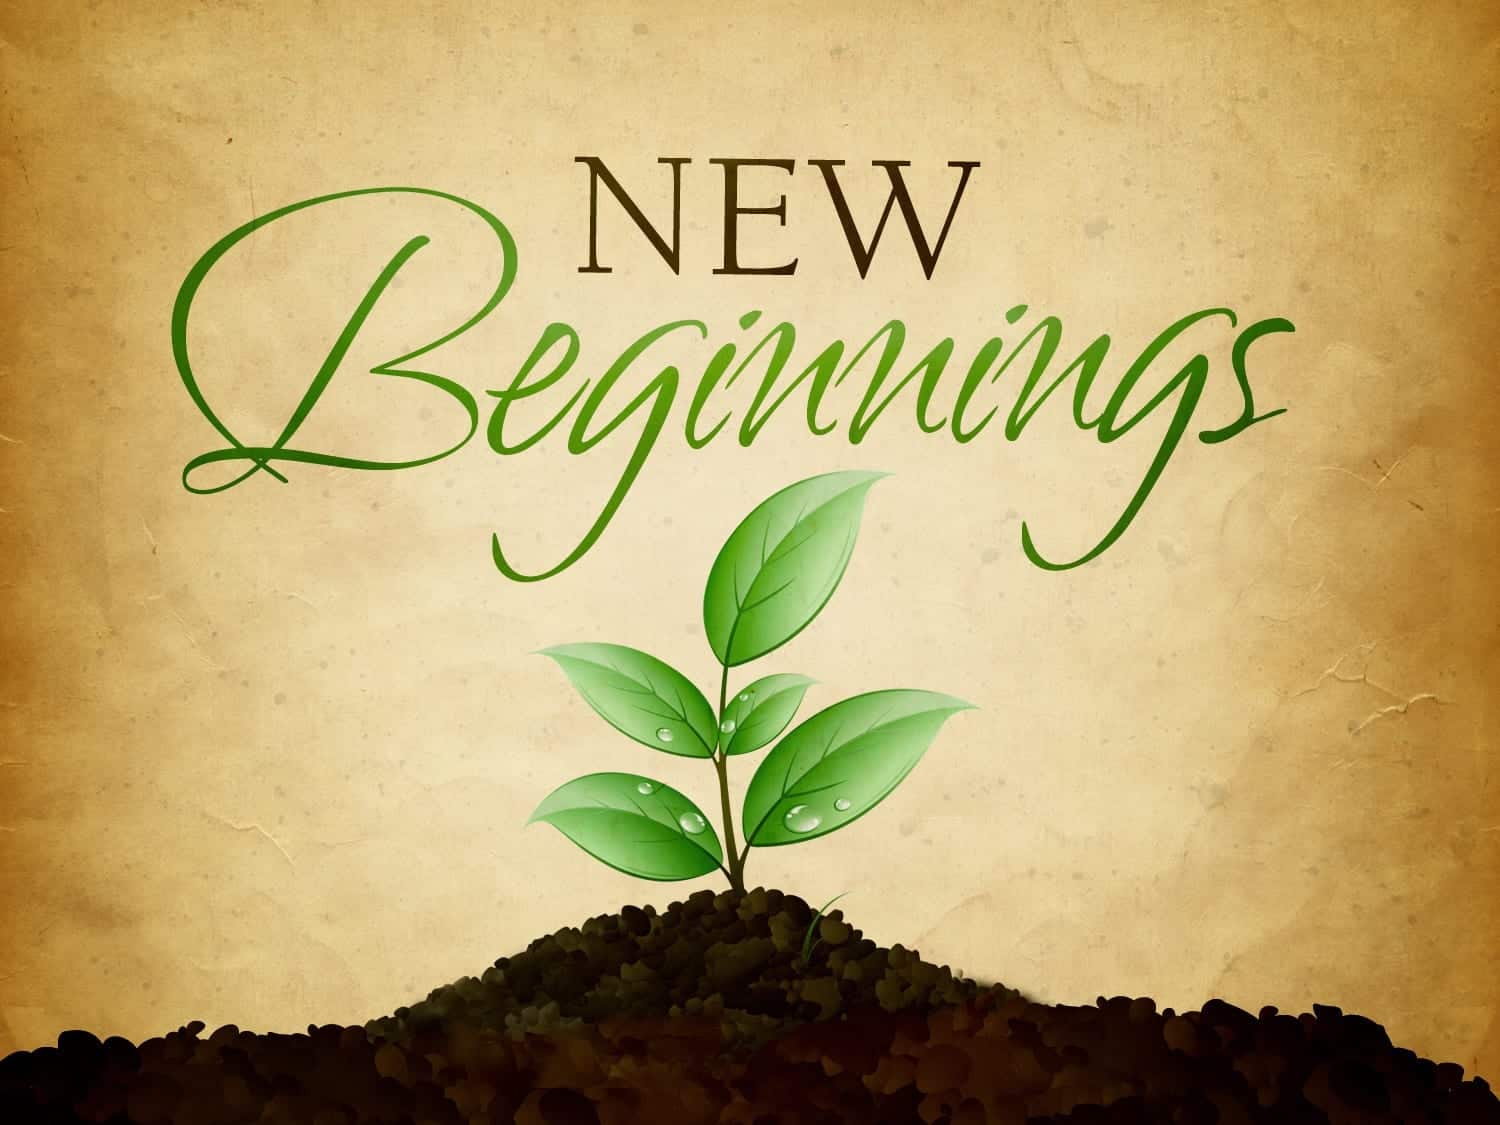 A New Start - The Concept of a New Beginning - Craig Lounsbrough